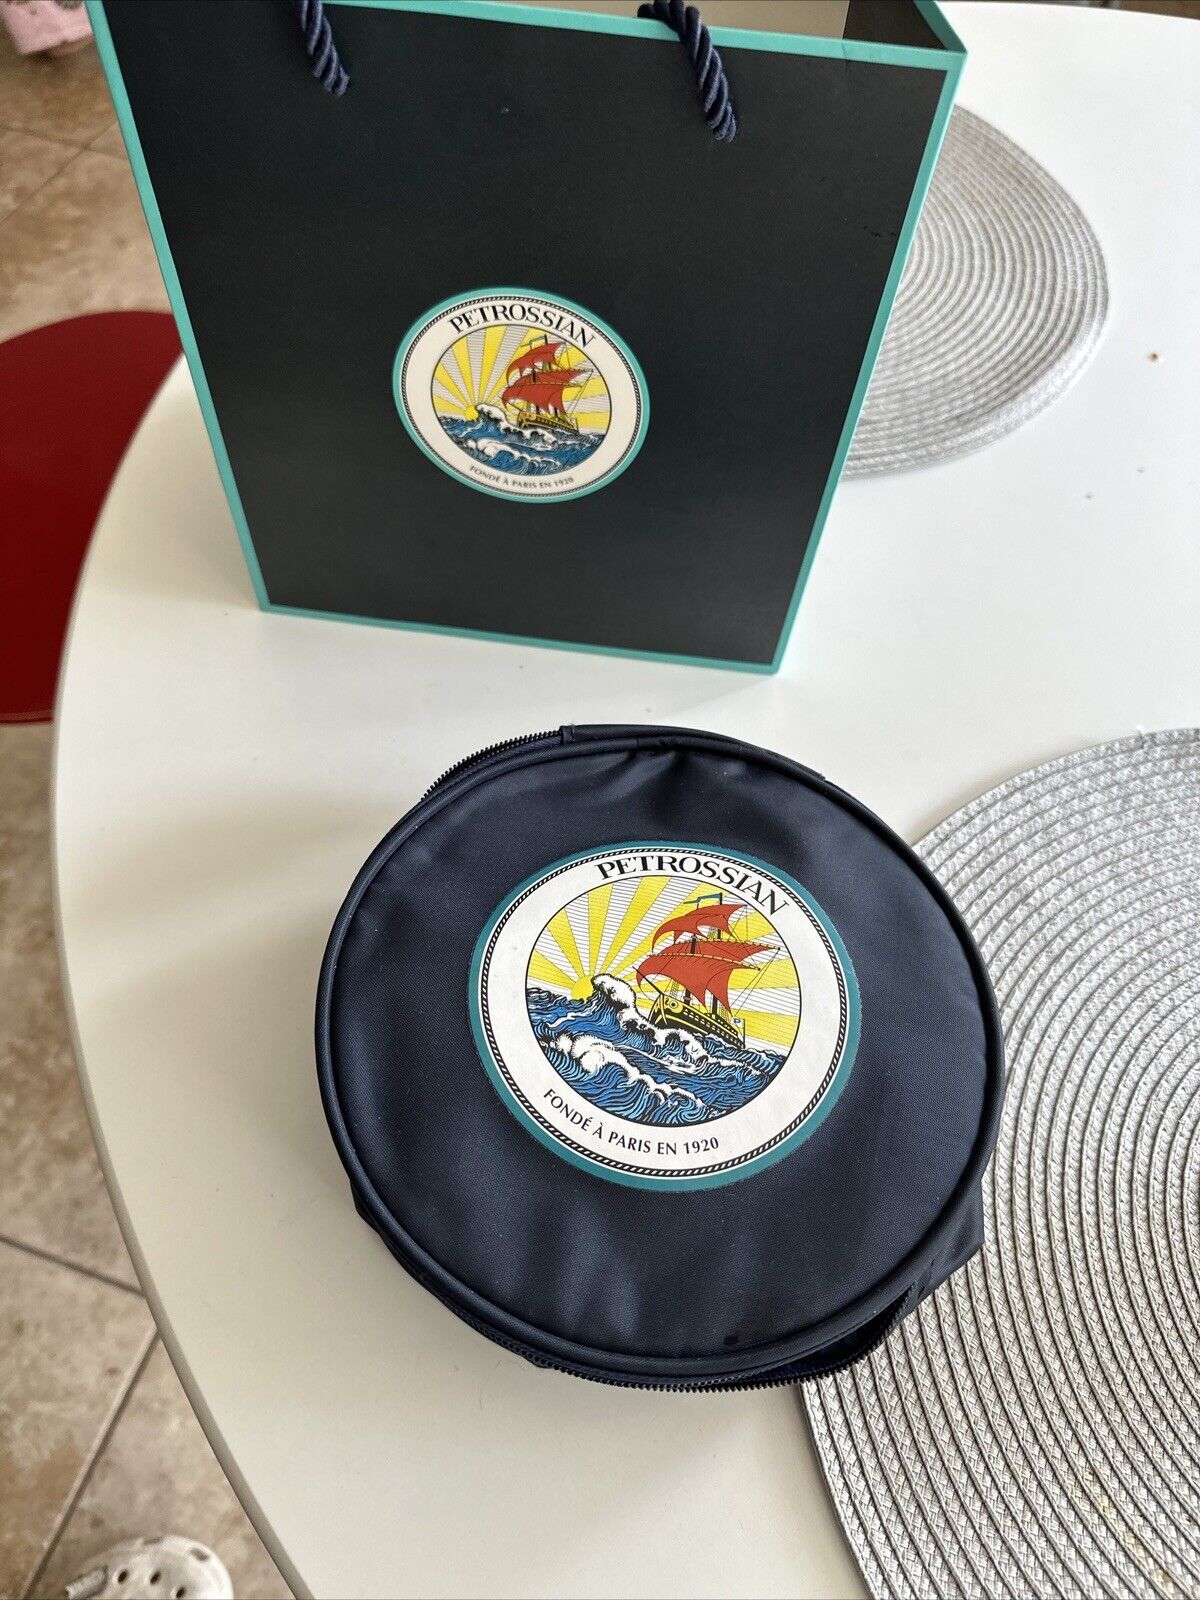 Petrossian Caviar Paris Insulated Zippered Bag